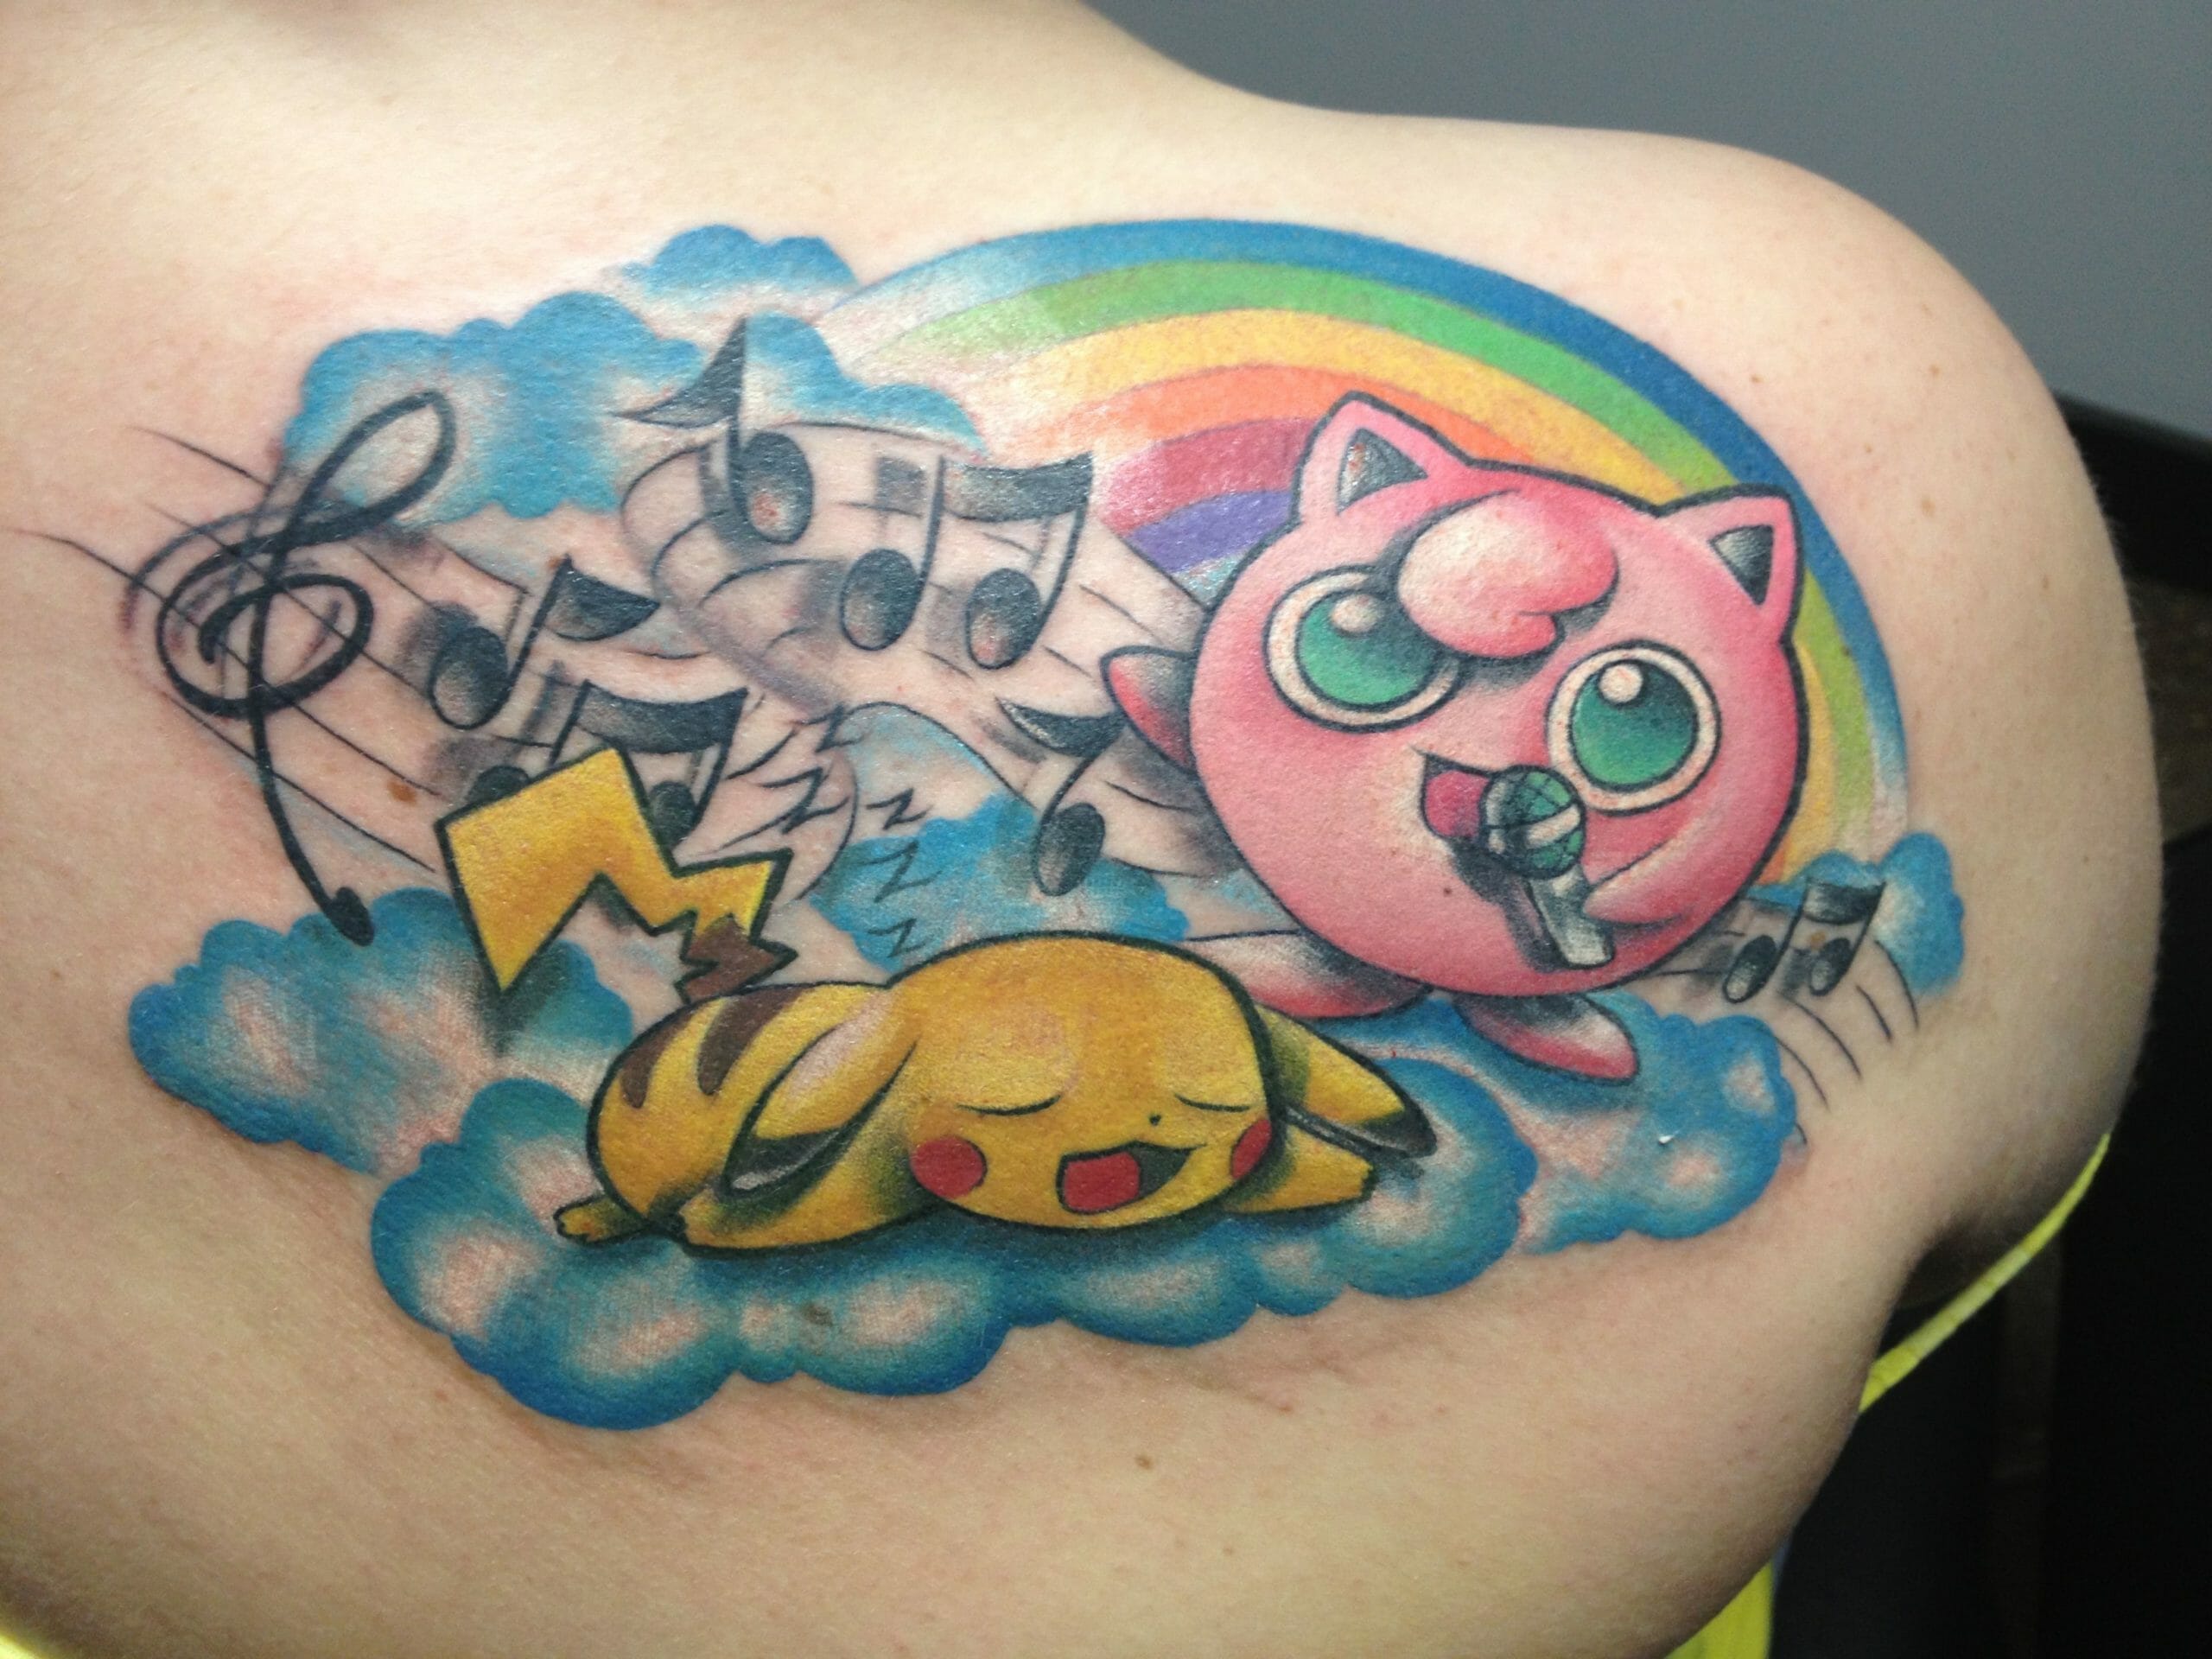 Badass Pikachu Tattoo - Best Tattoo Ideas Gallery